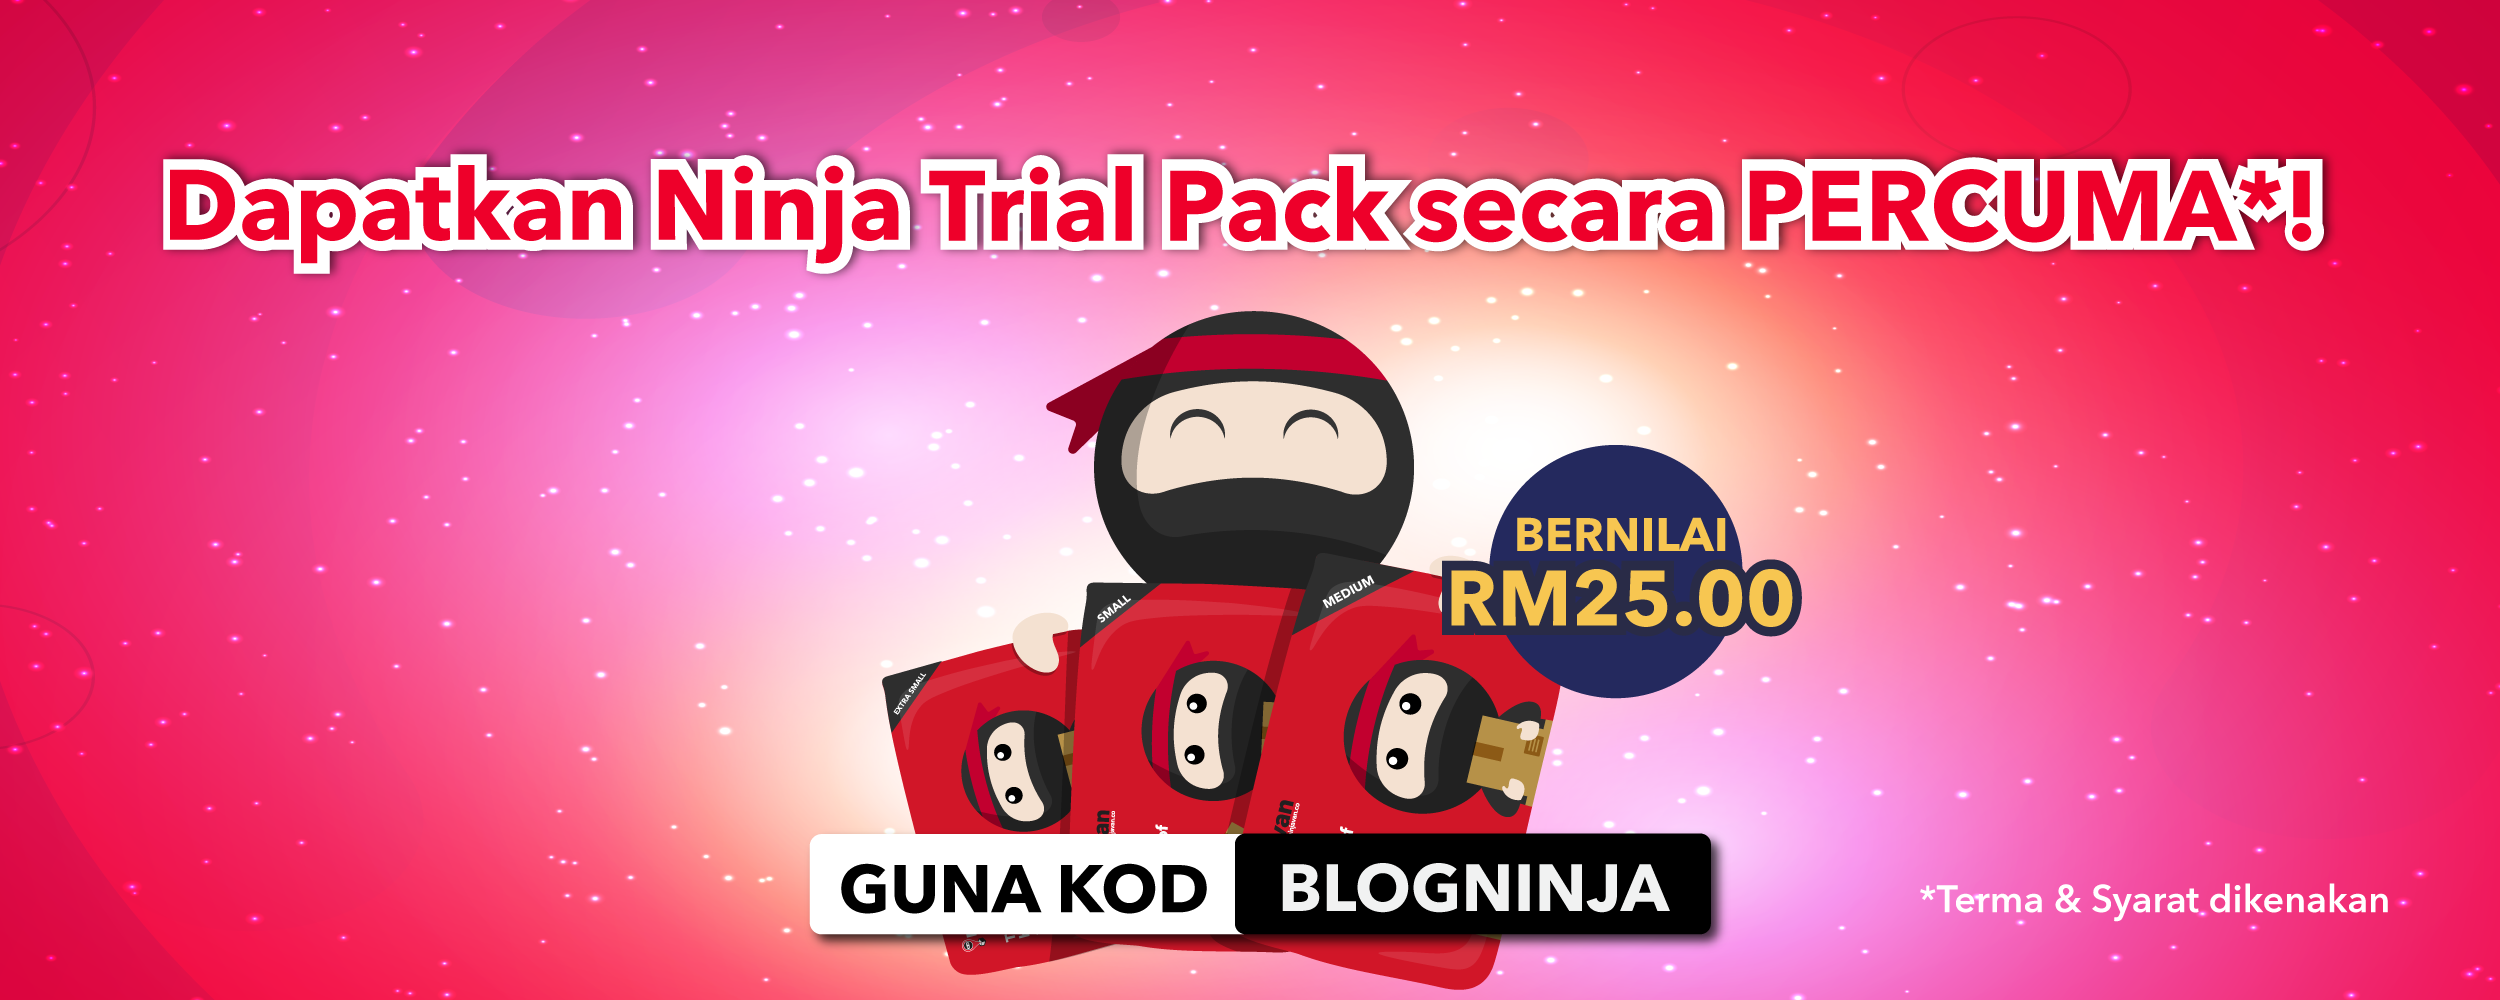 ninja trial pack